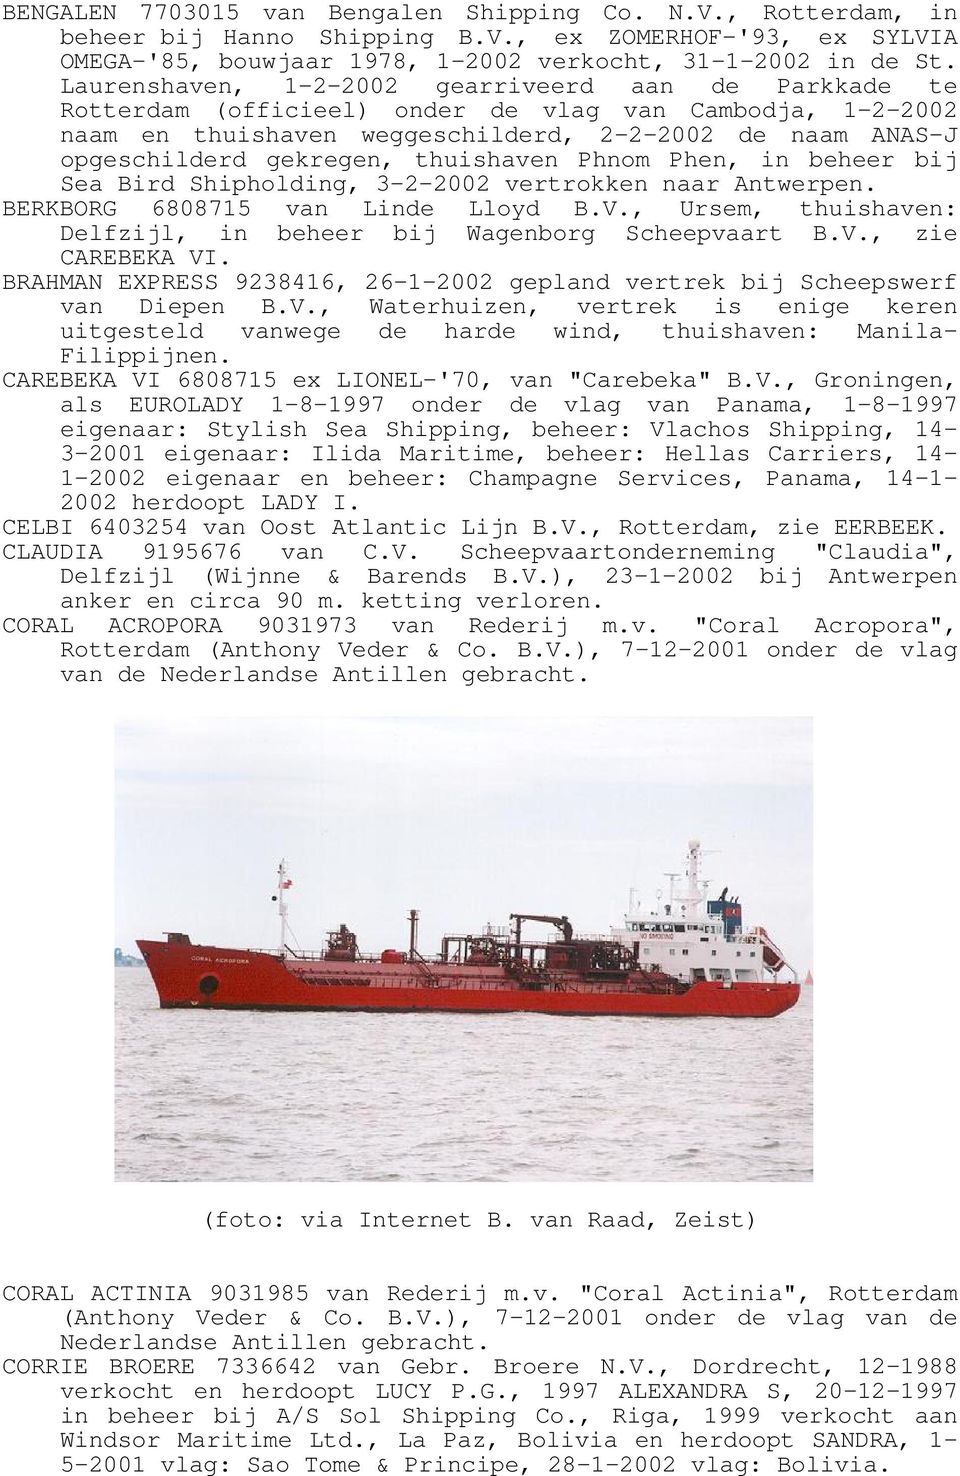 thuishaven Phnom Phen, in beheer bij Sea Bird Shipholding, 3-2-2002 vertrokken naar Antwerpen. BERKBORG 6808715 van Linde Lloyd B.V.